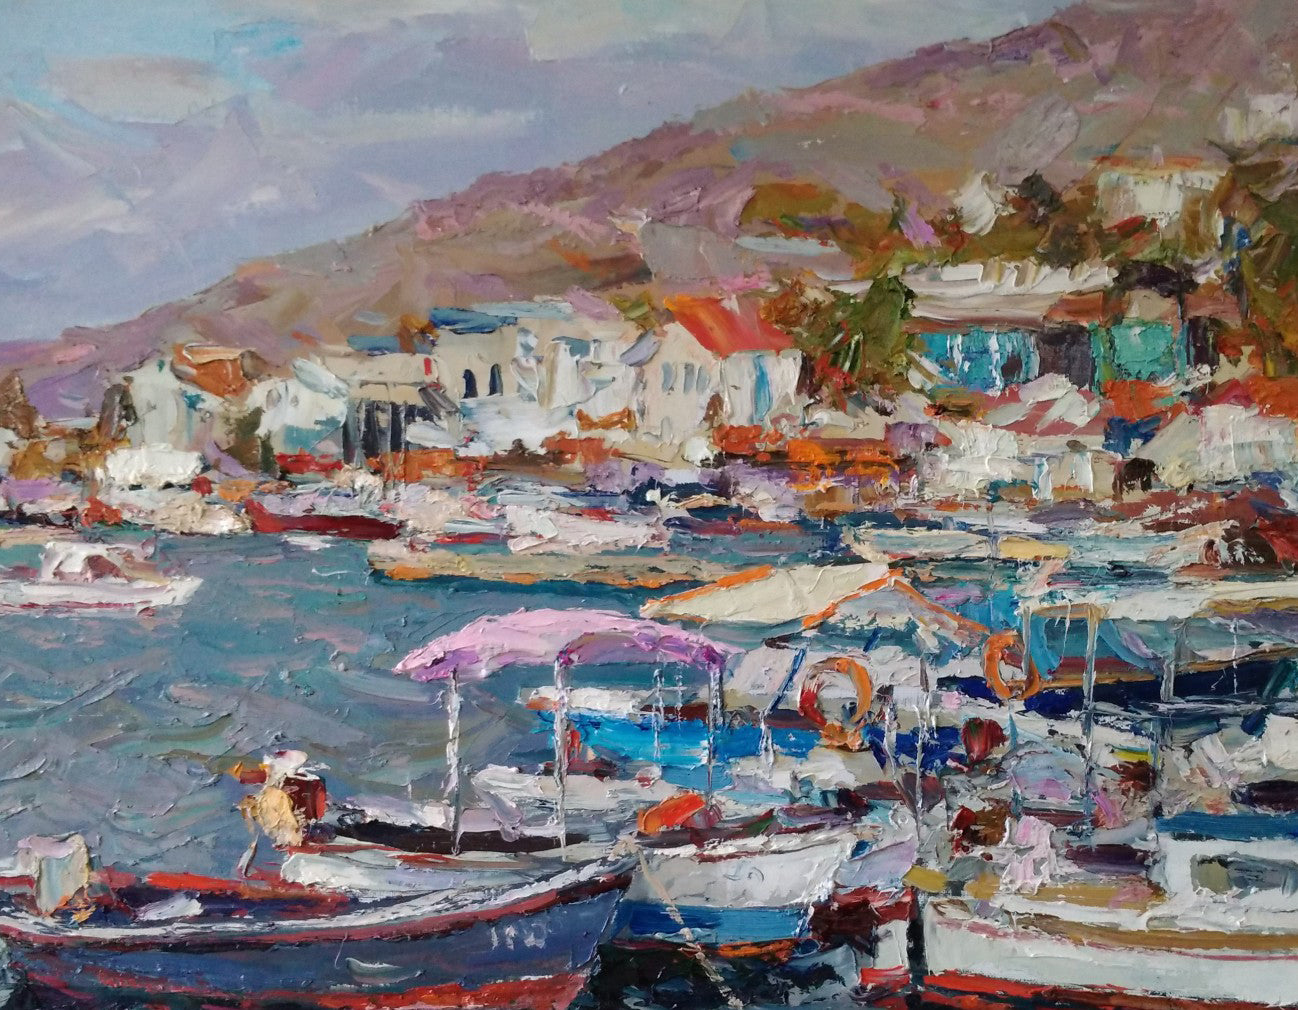 Oil artwork featuring "Boats Near the Pier" by Alexander Nikolaevich Cherednichenko